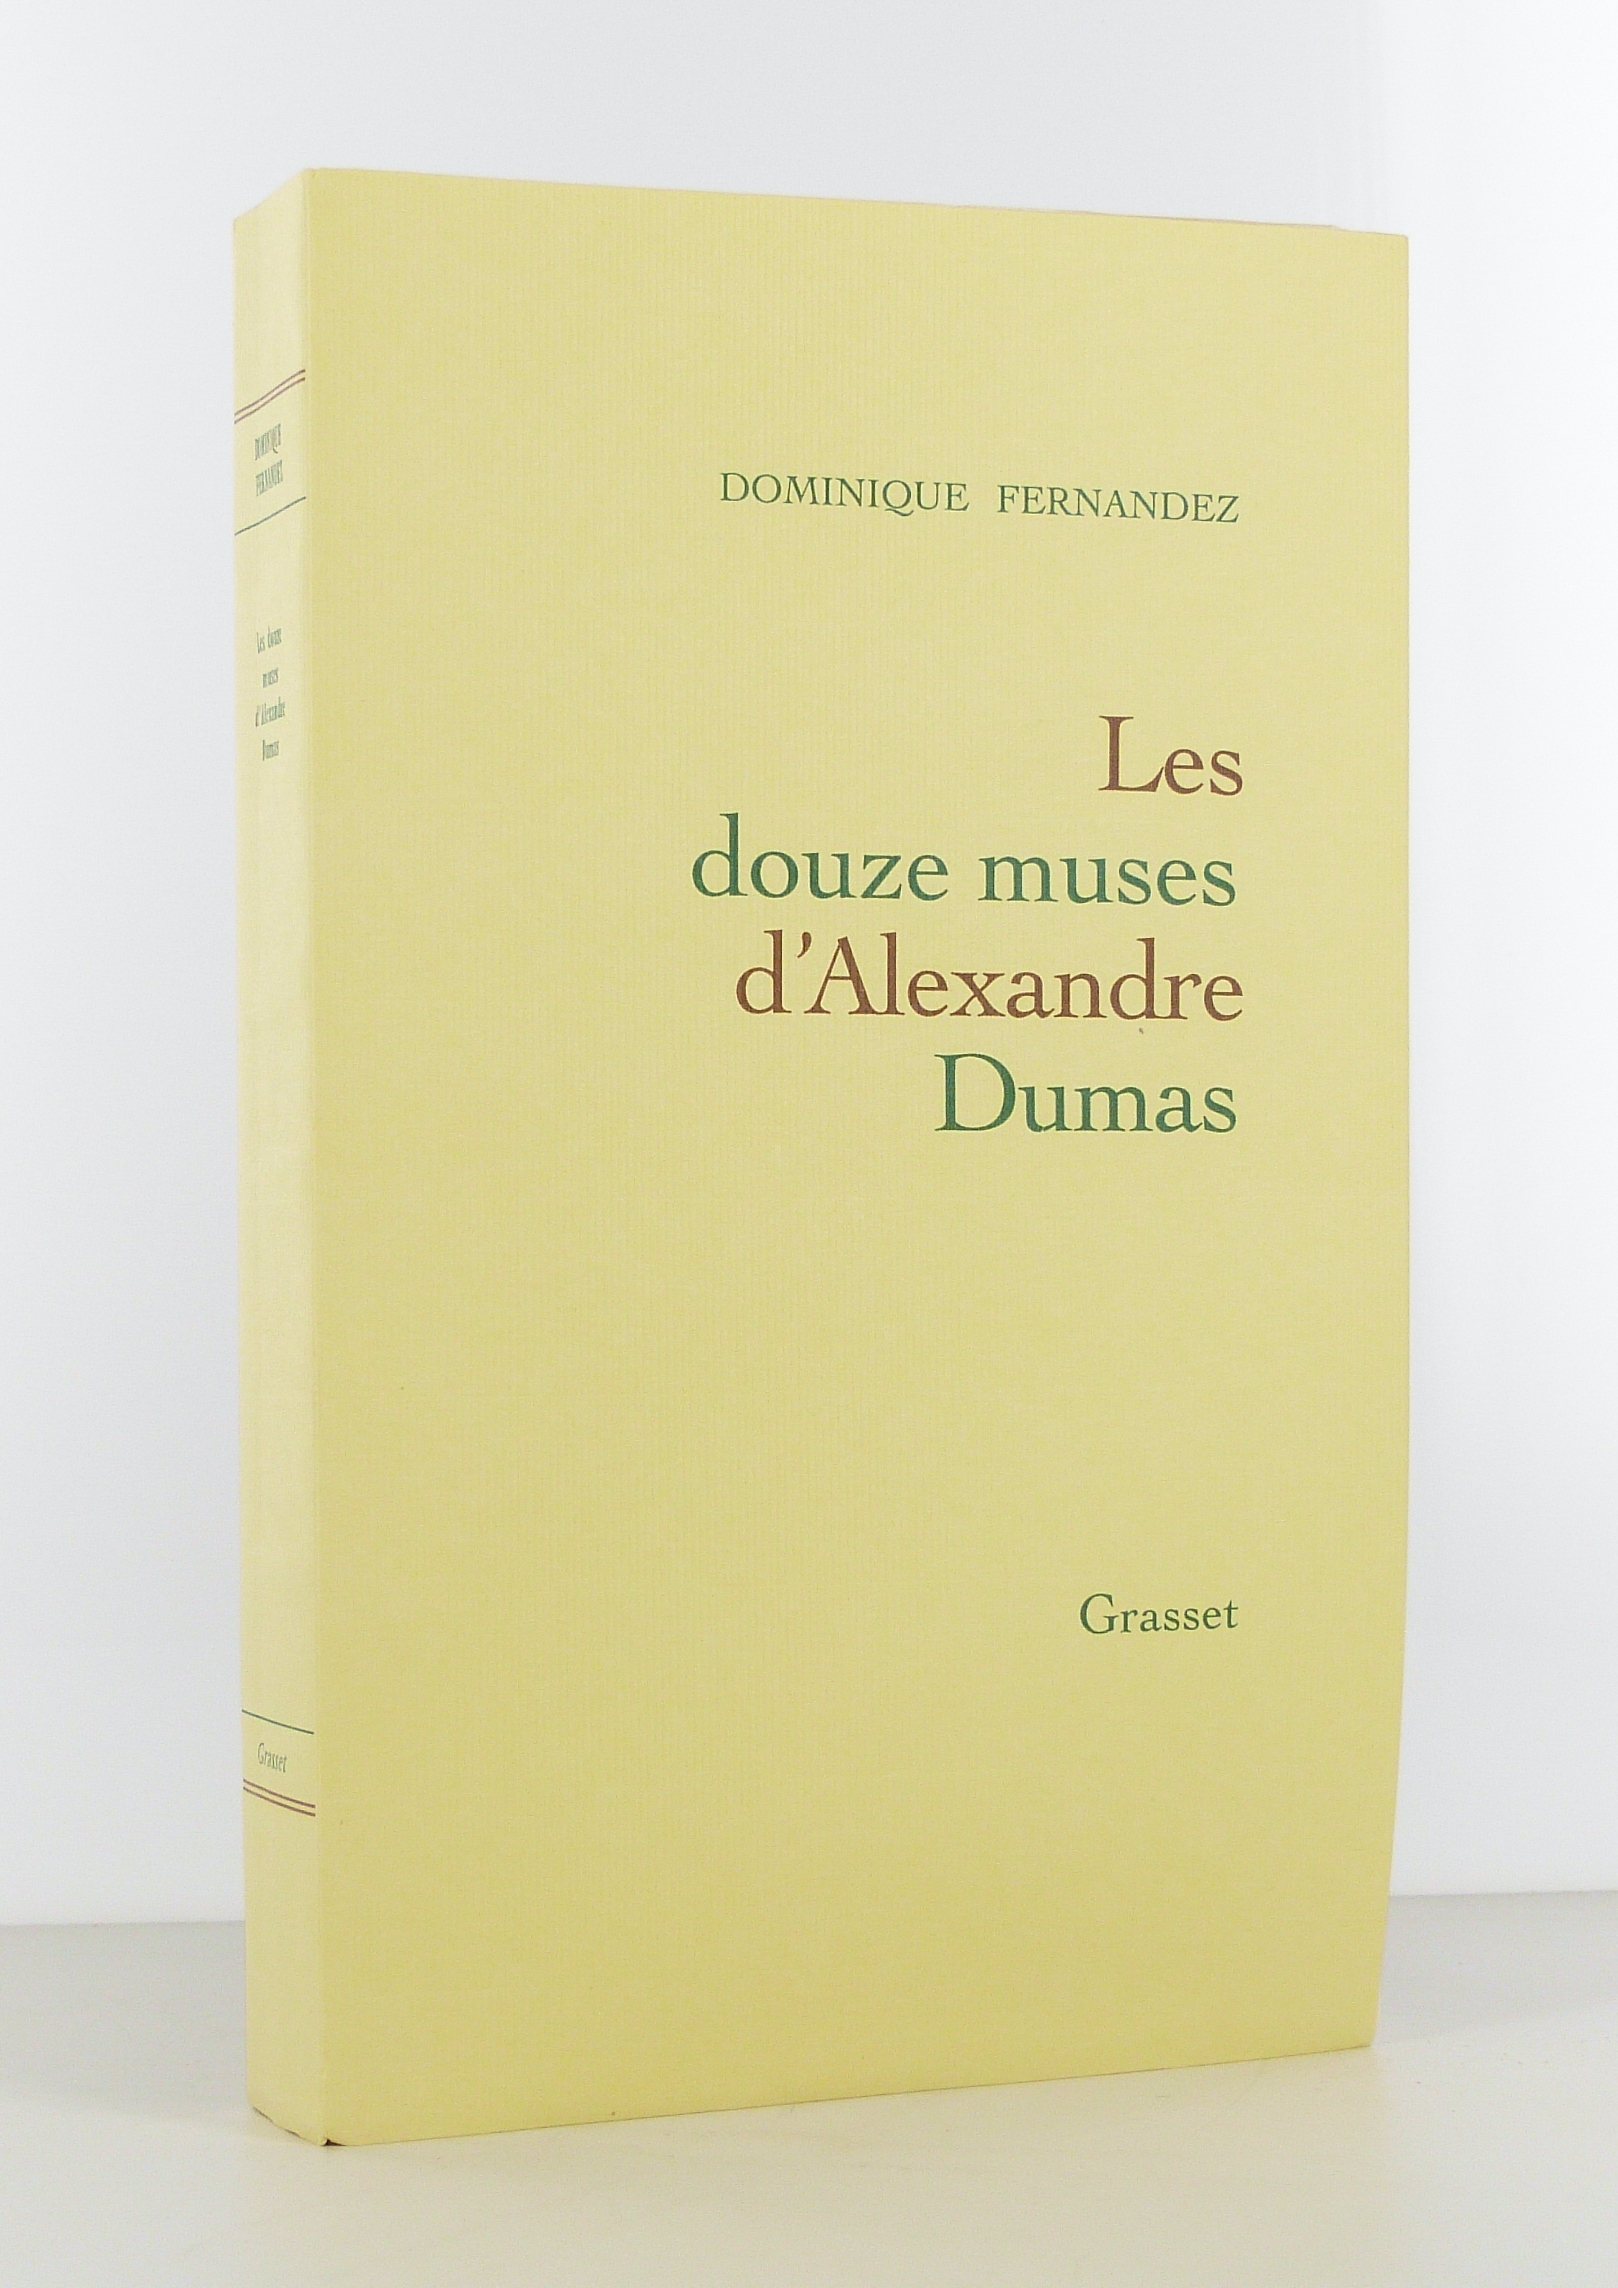 Les douze muses d'Alexandre Dumas